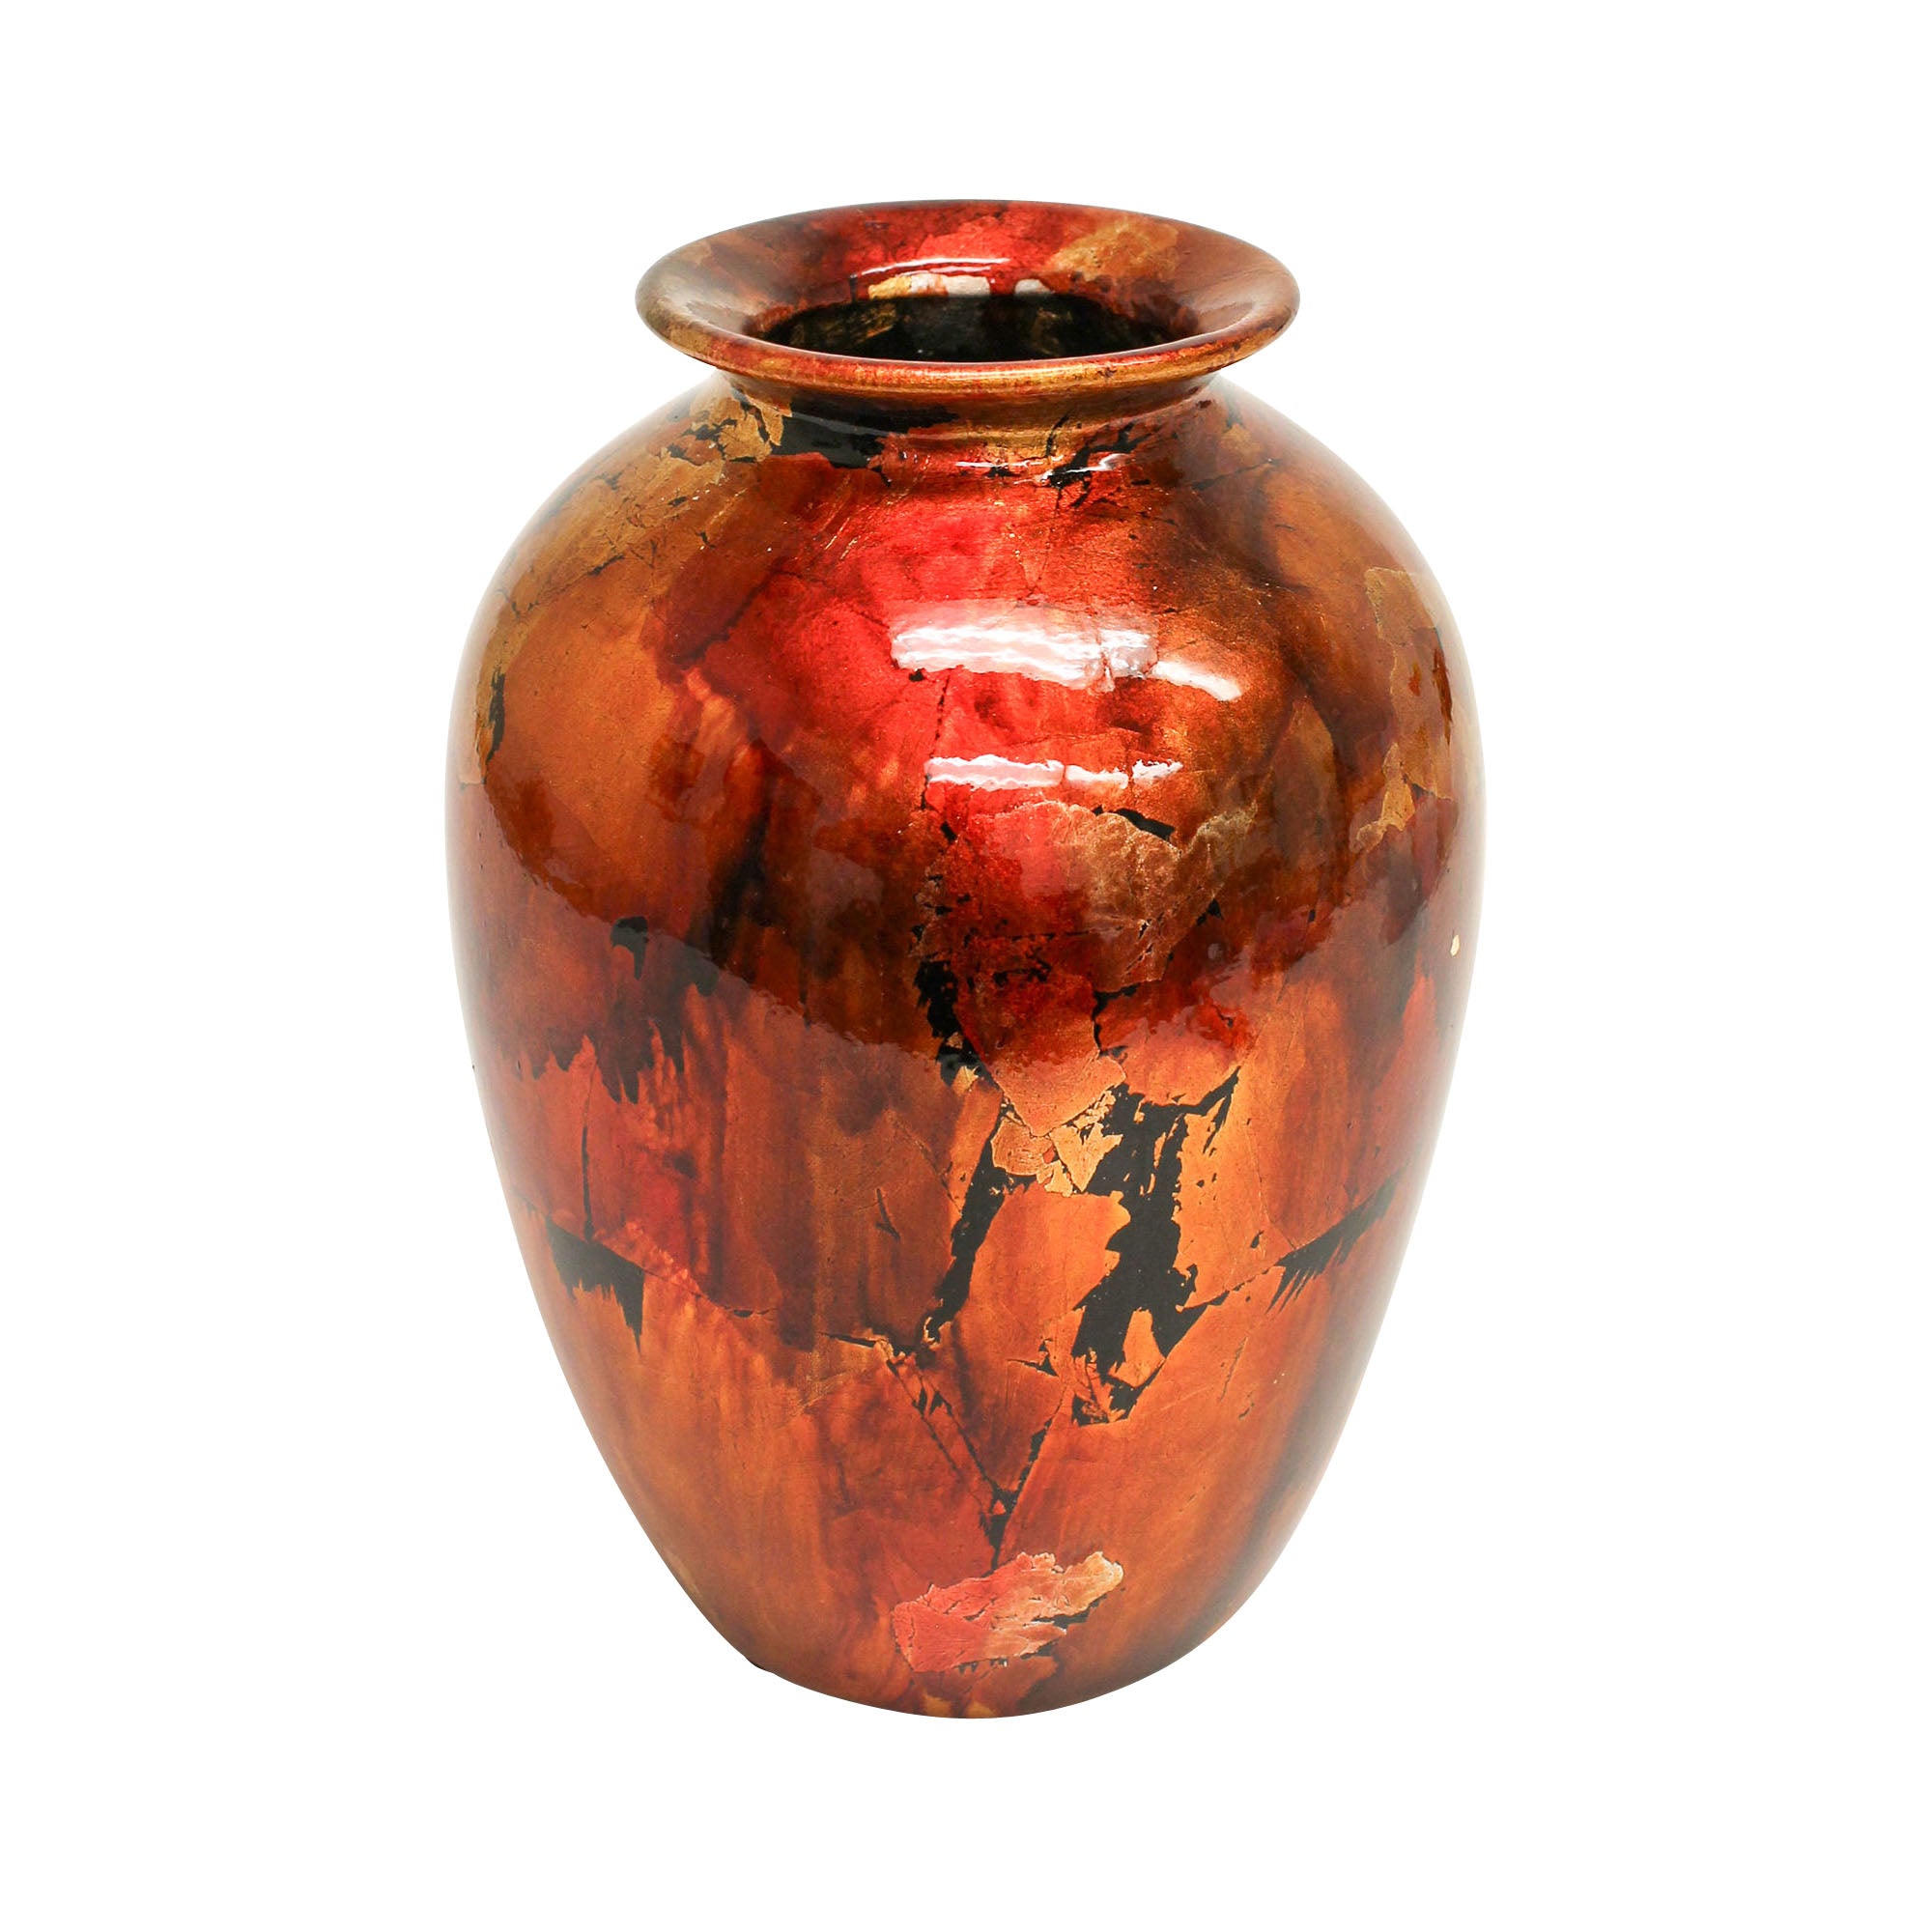 Mottle - 'Red Gold Vase' 25cm